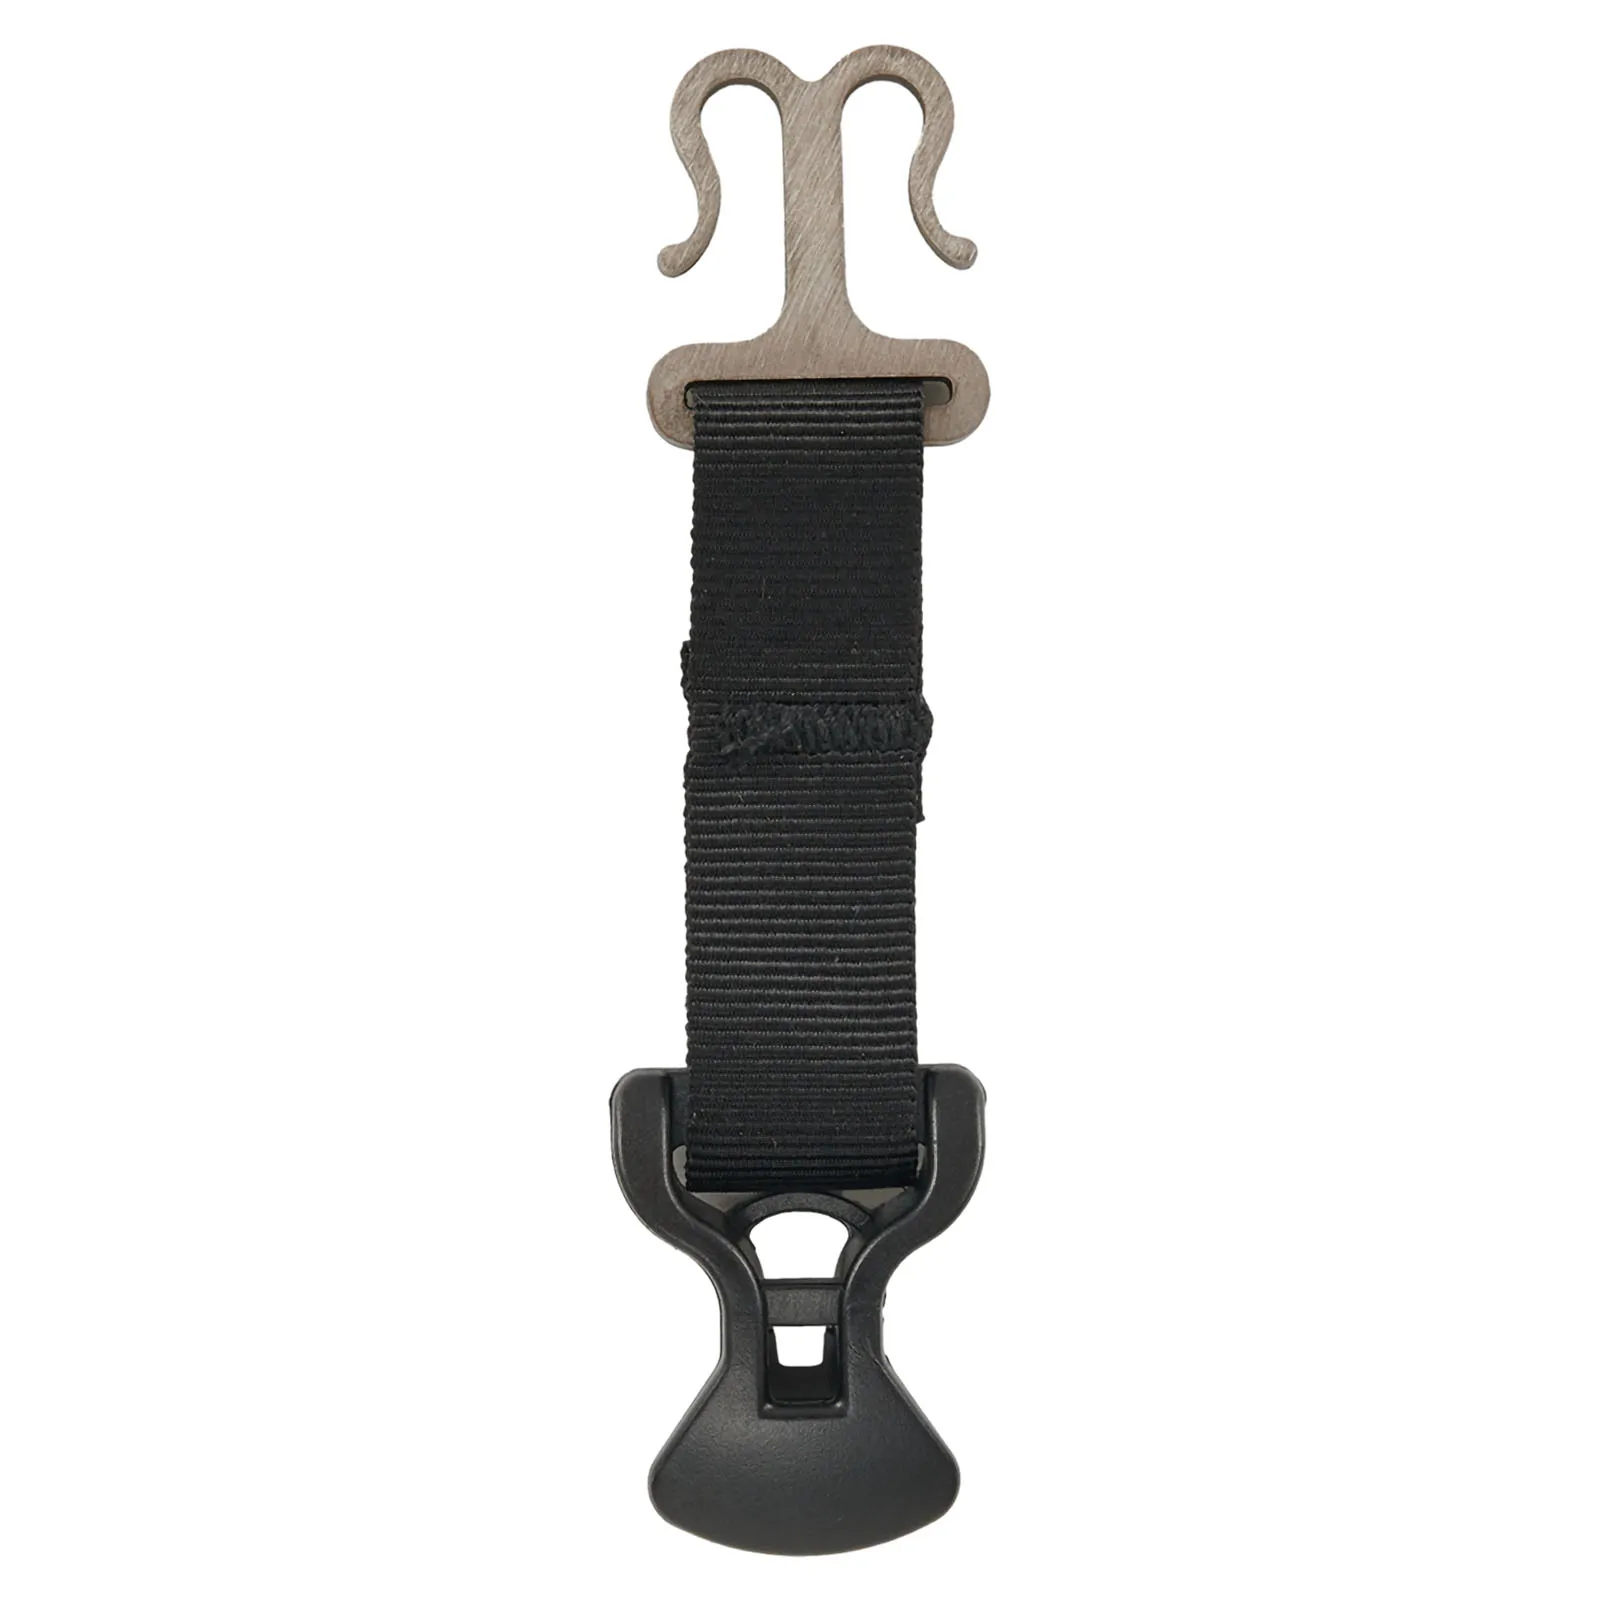 

Крючки Пряжка для палатки держатель веревки практичный для использования около 85x20 мм черный прочный нейлон + нержавеющая сталь + ABS палатка набор